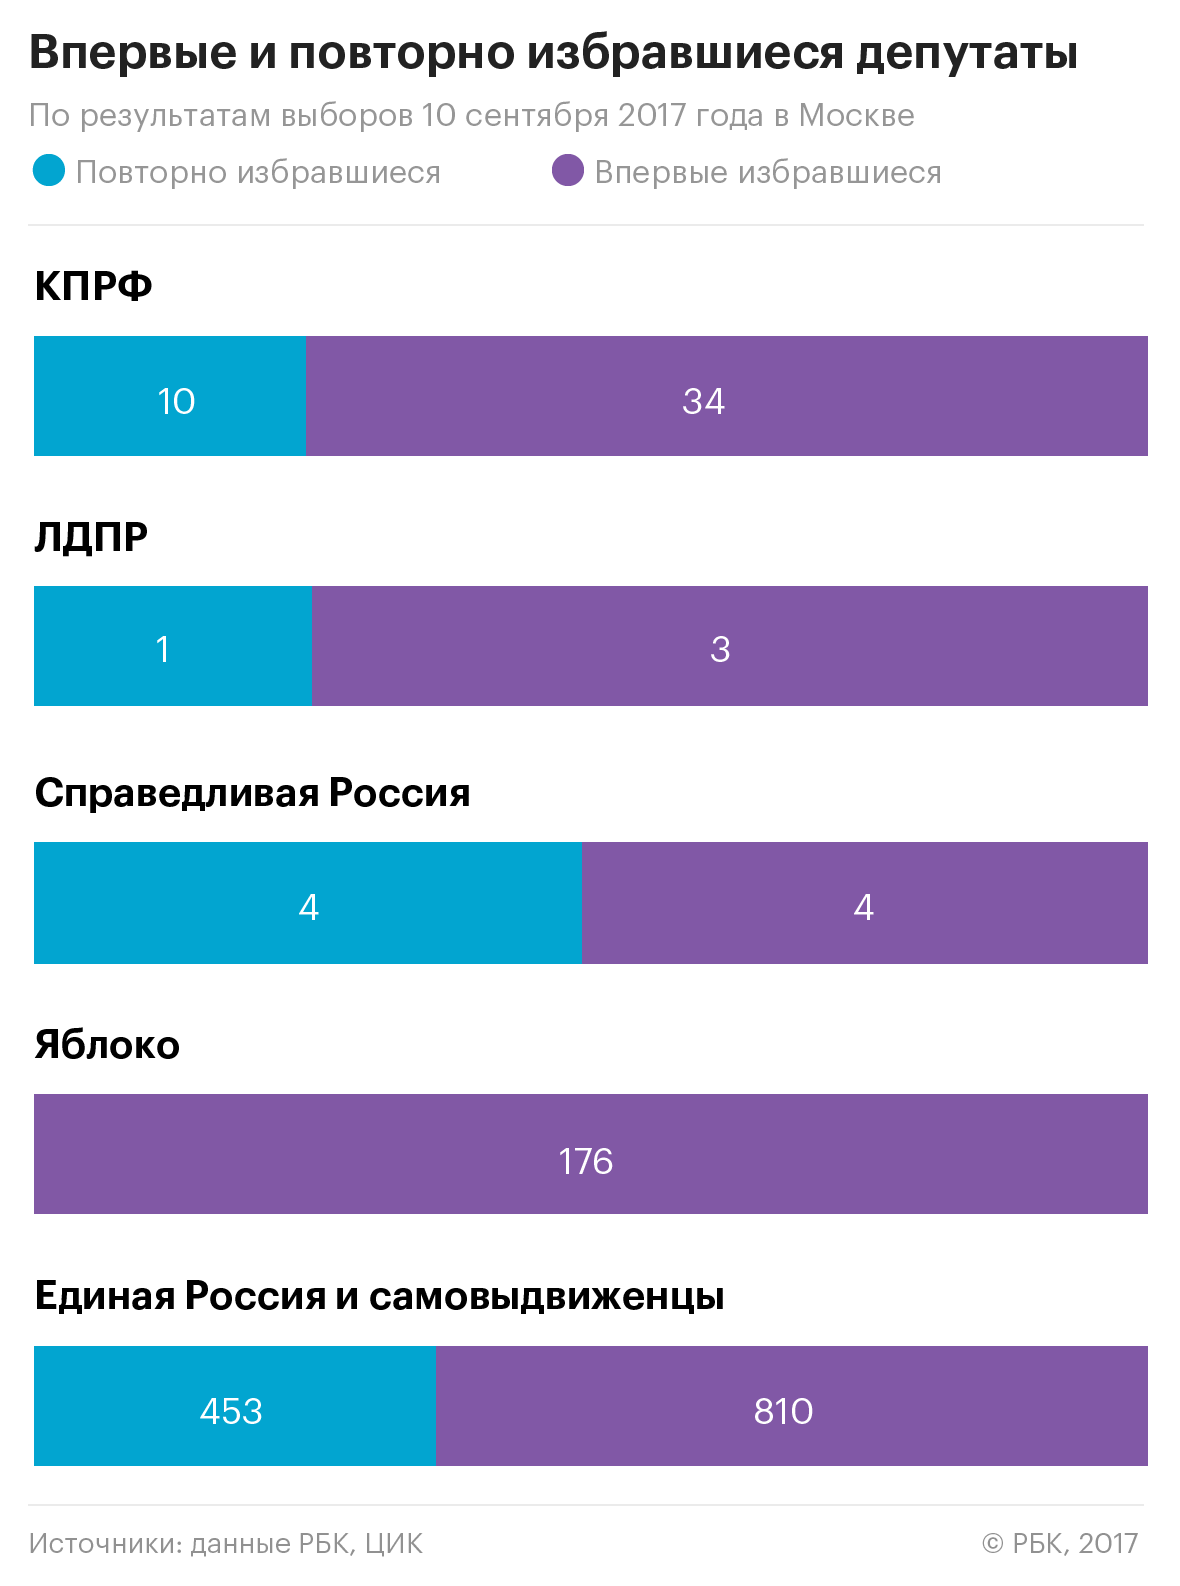 Москвичи против безработных: кто проиграл выборы в столице